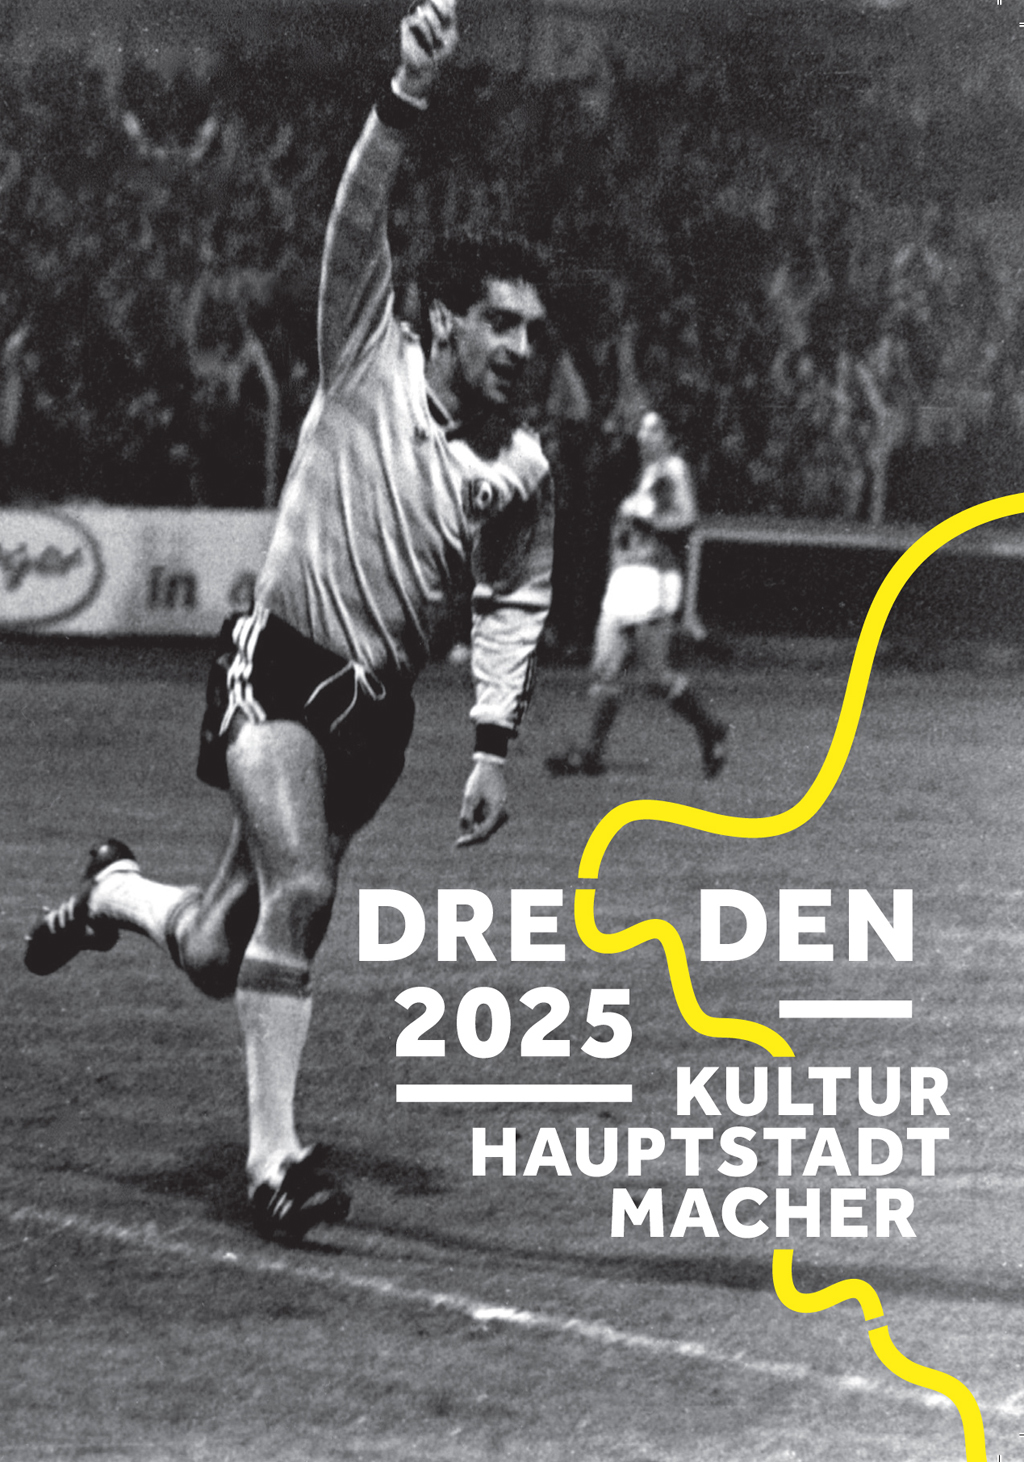 Postkartenmotiv mit schwarz-weißem Foto eines Fußballers im Stadion und Kulturhauptstadtmacher-Logo.